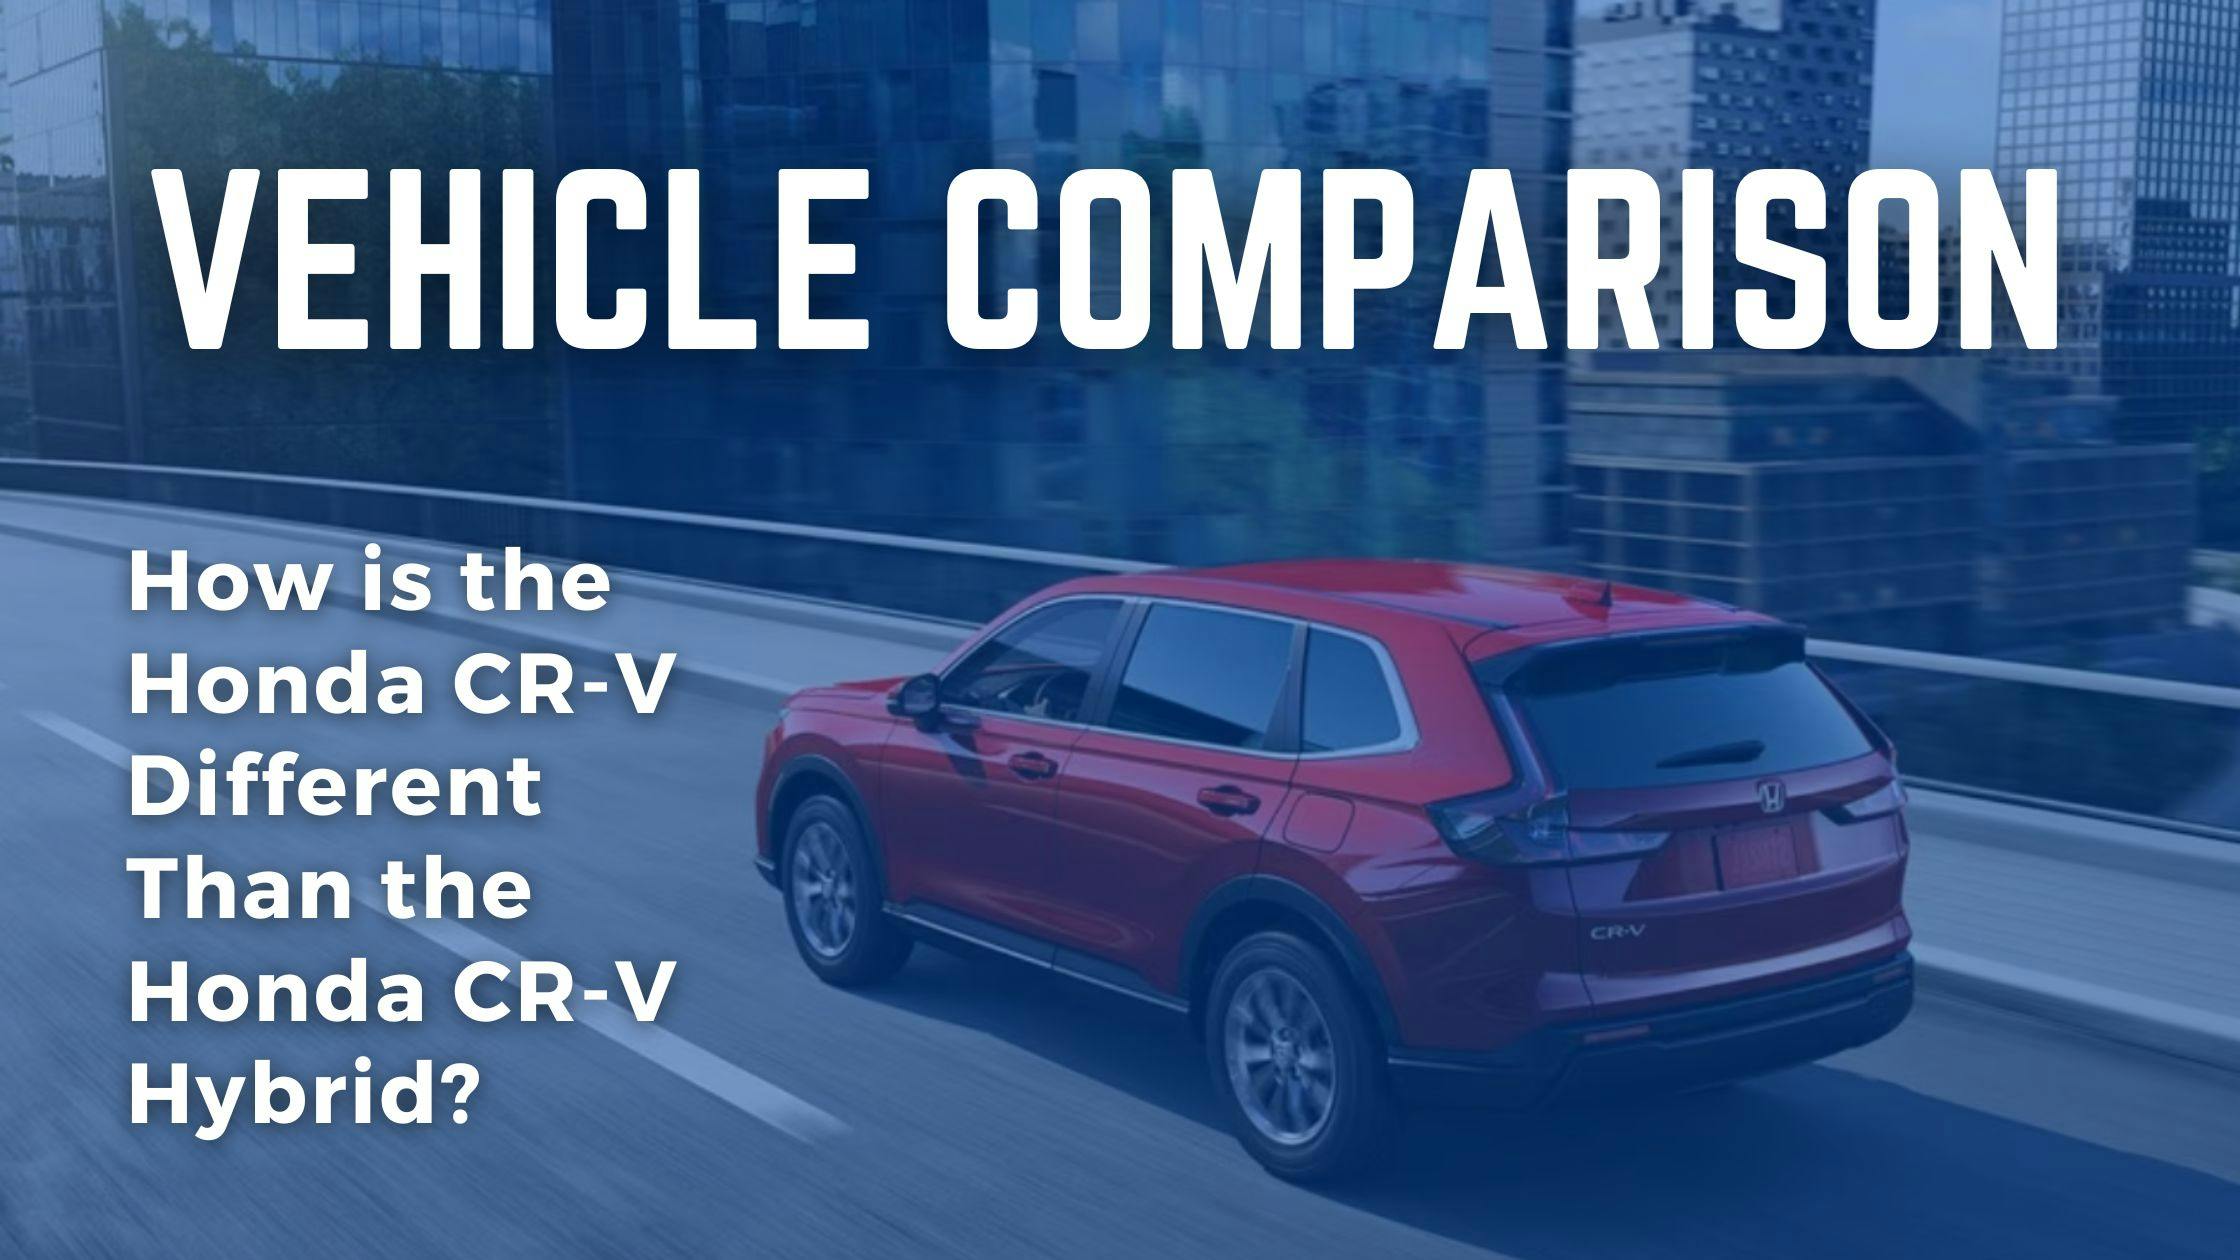 How is the Honda CR-V Different from the Honda CR-V Hybrid